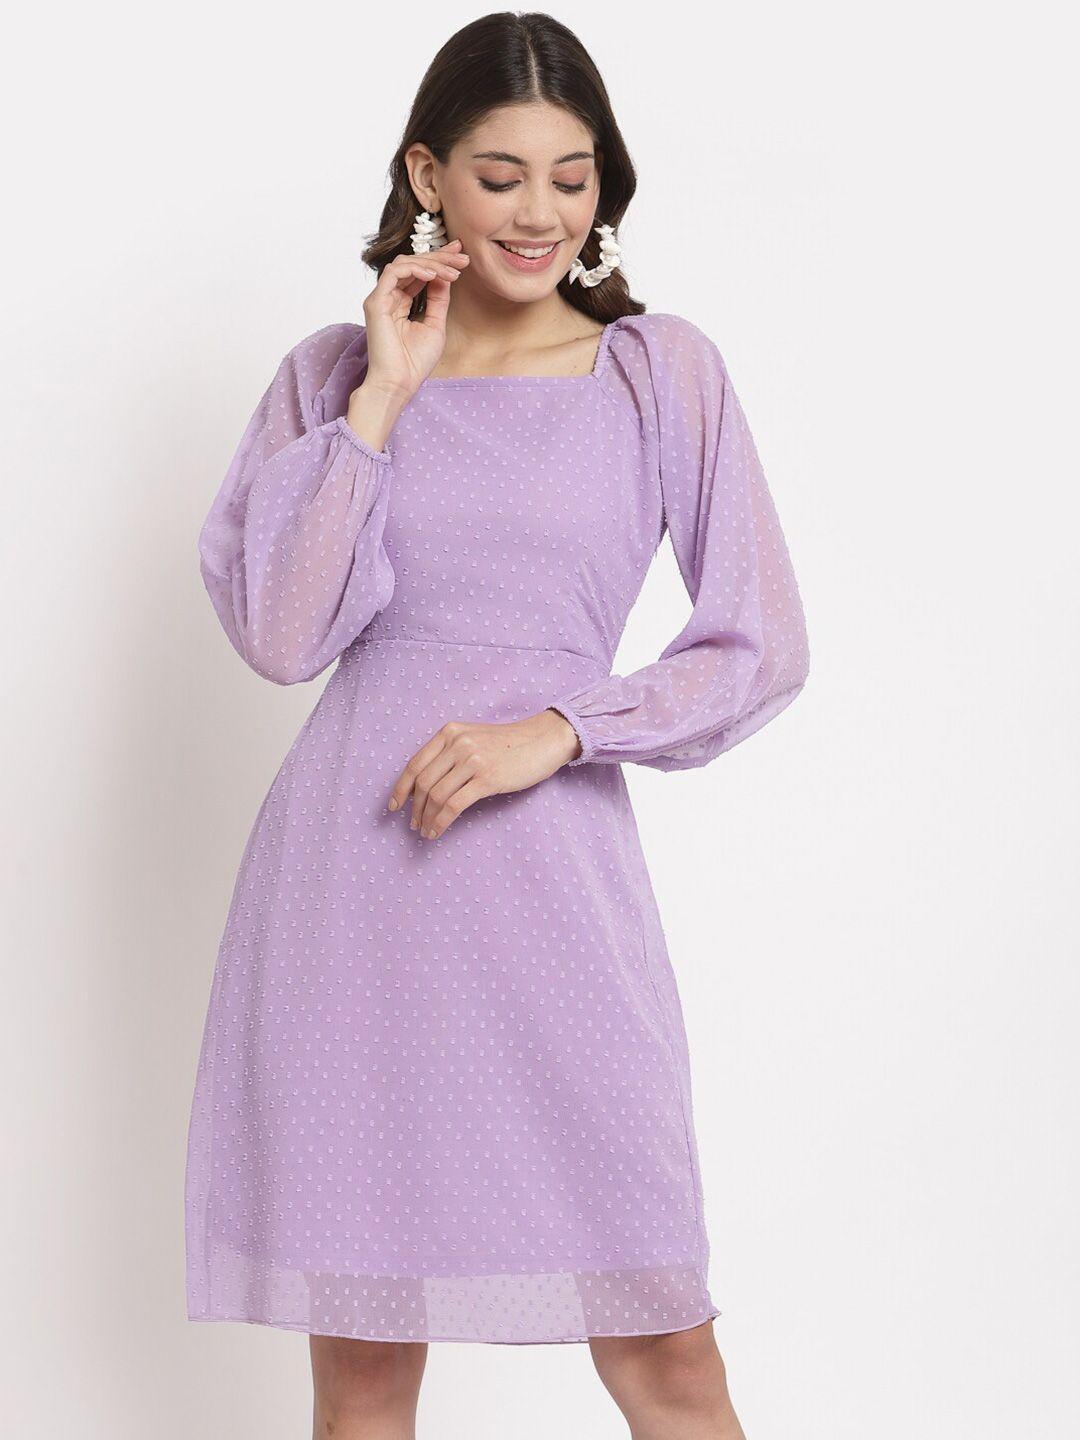 aayu women lavender georgette a-line dress